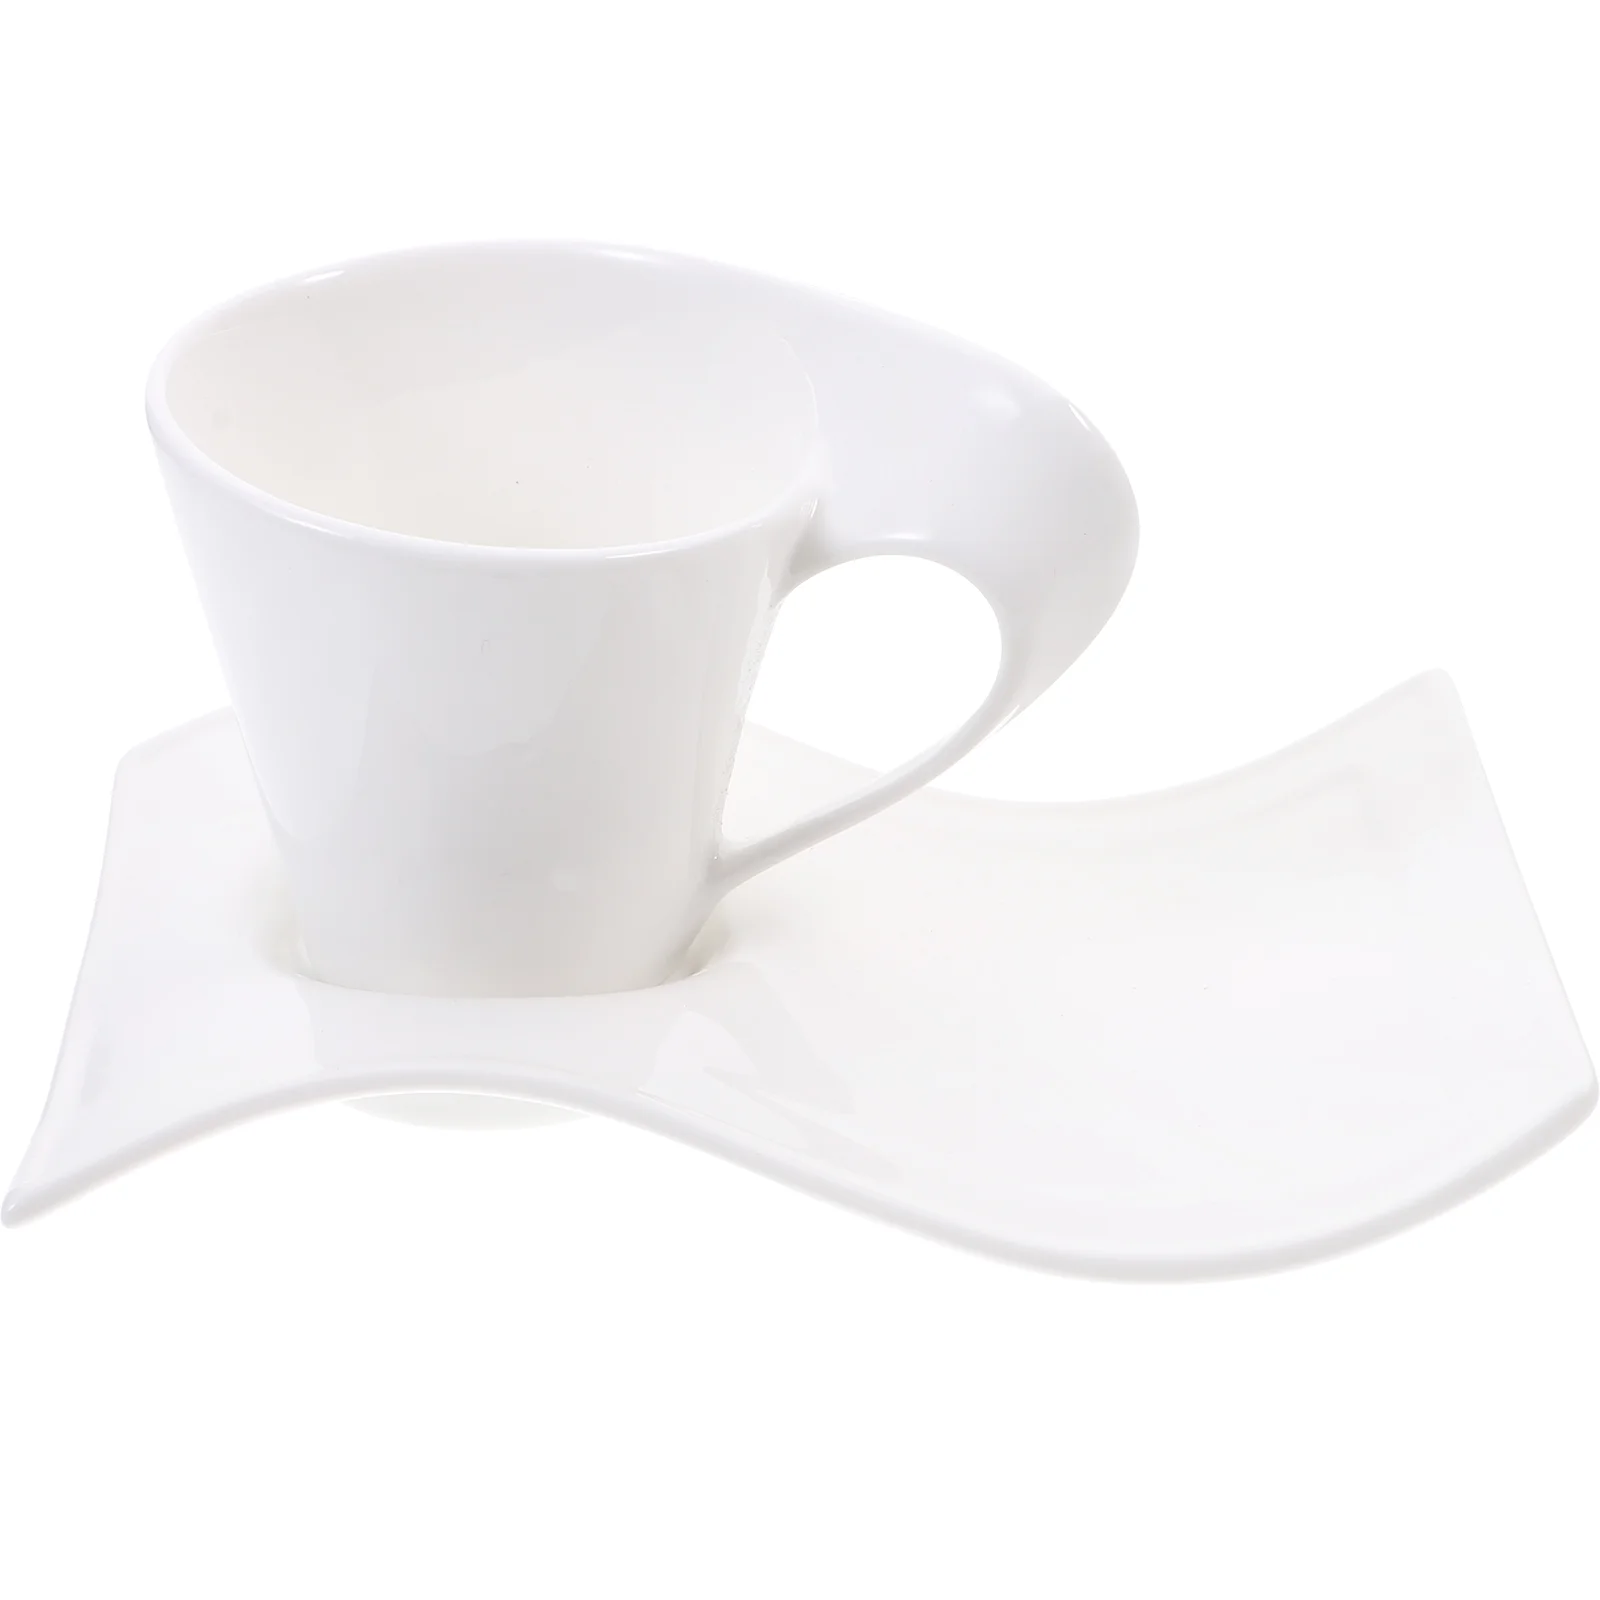 

Cup Ceramic Mug Coffee Tea Cups Saucer Cappuccino Wave Porcelain Set New Espresso Latte Caffe Mugs Cafe Saucers White China